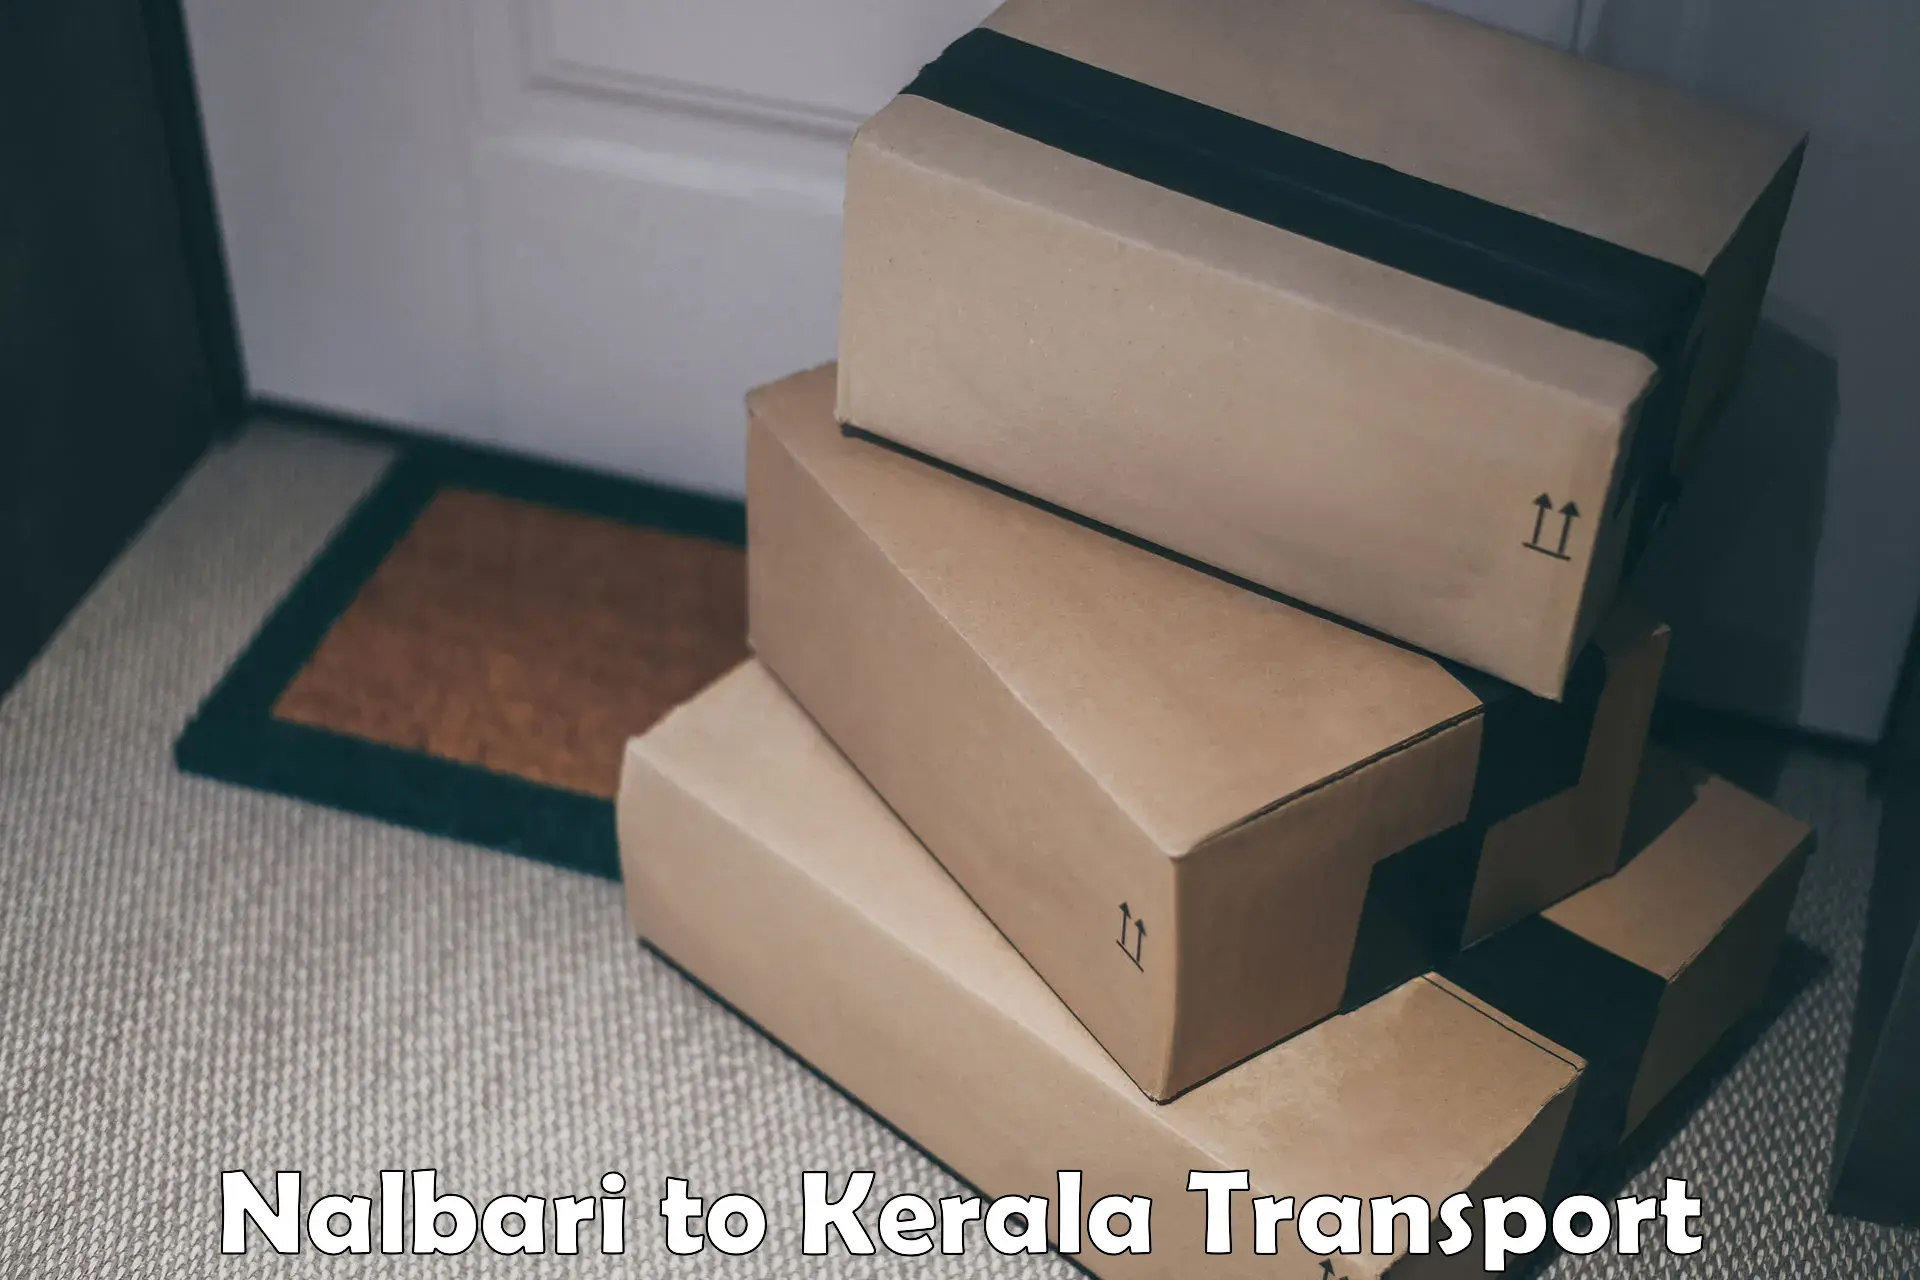 Shipping partner Nalbari to IIIT Kottayam